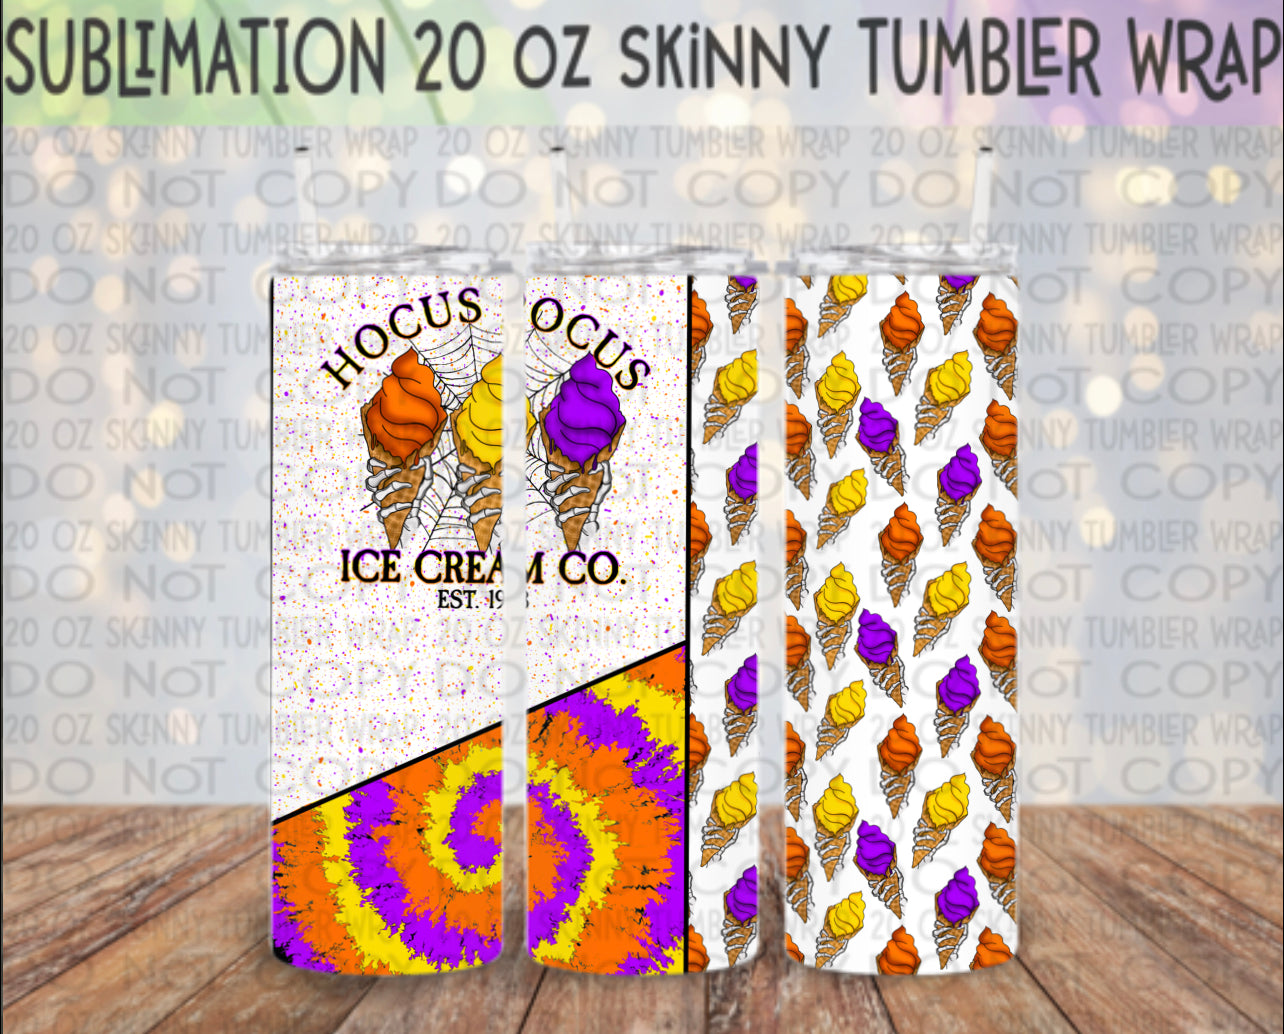 Ice Cream Co. 20 Oz Skinny Tumbler Wrap - Sublimation Transfer - RTS